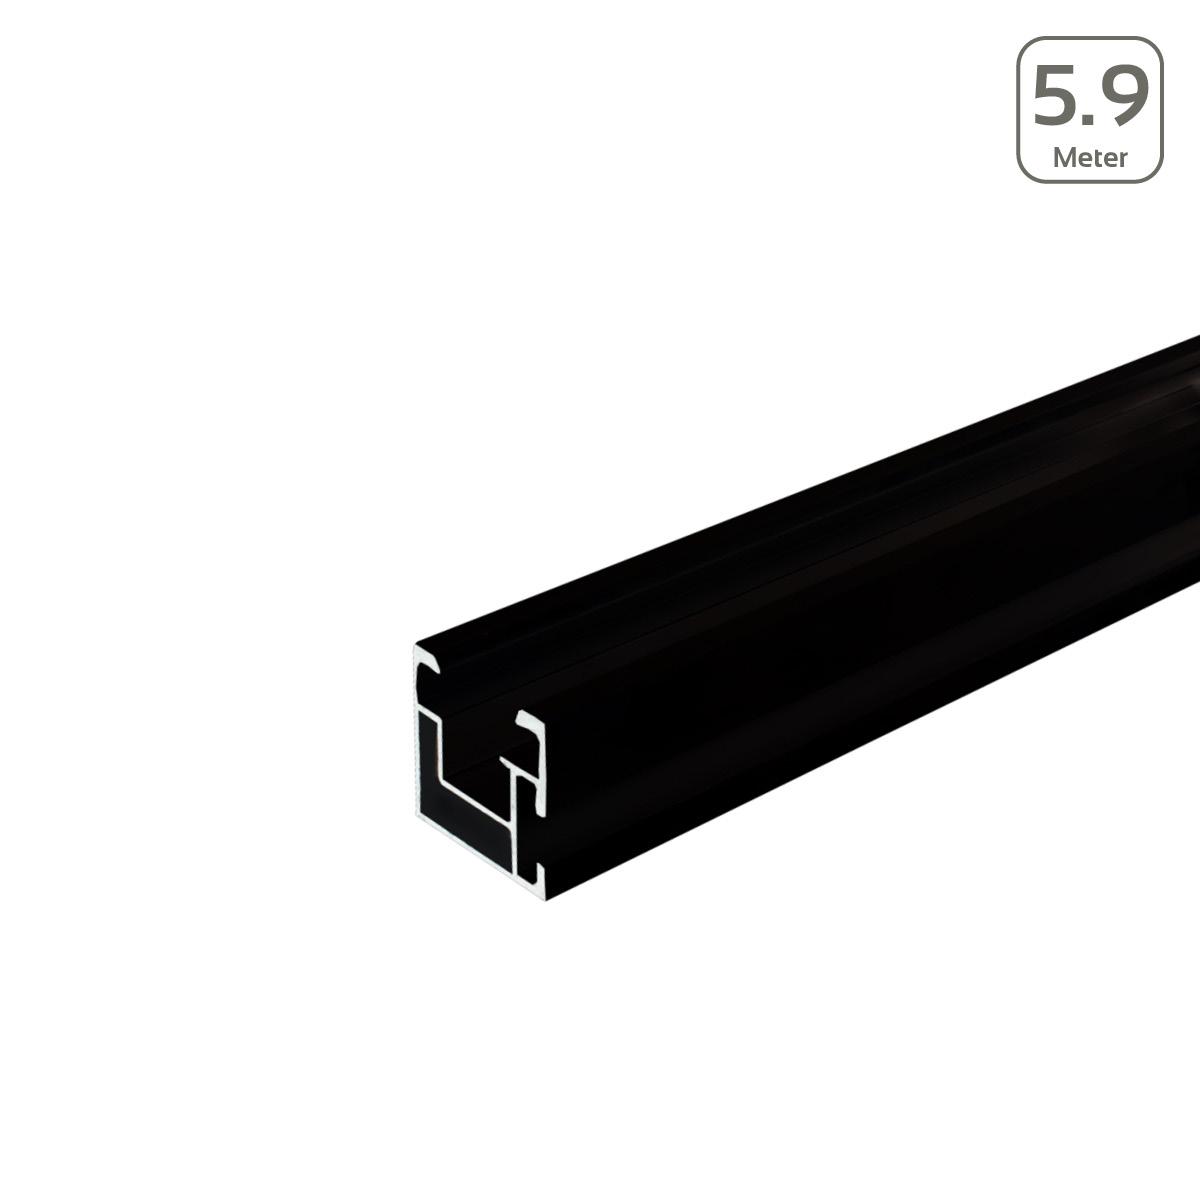 Avanti Profil schwarz eloxiert mit seitlicher Anbindung/Hammerkopfschr. M10 - Länge: 5,9 Meter - MwSt: 19% für Geschäftskunden